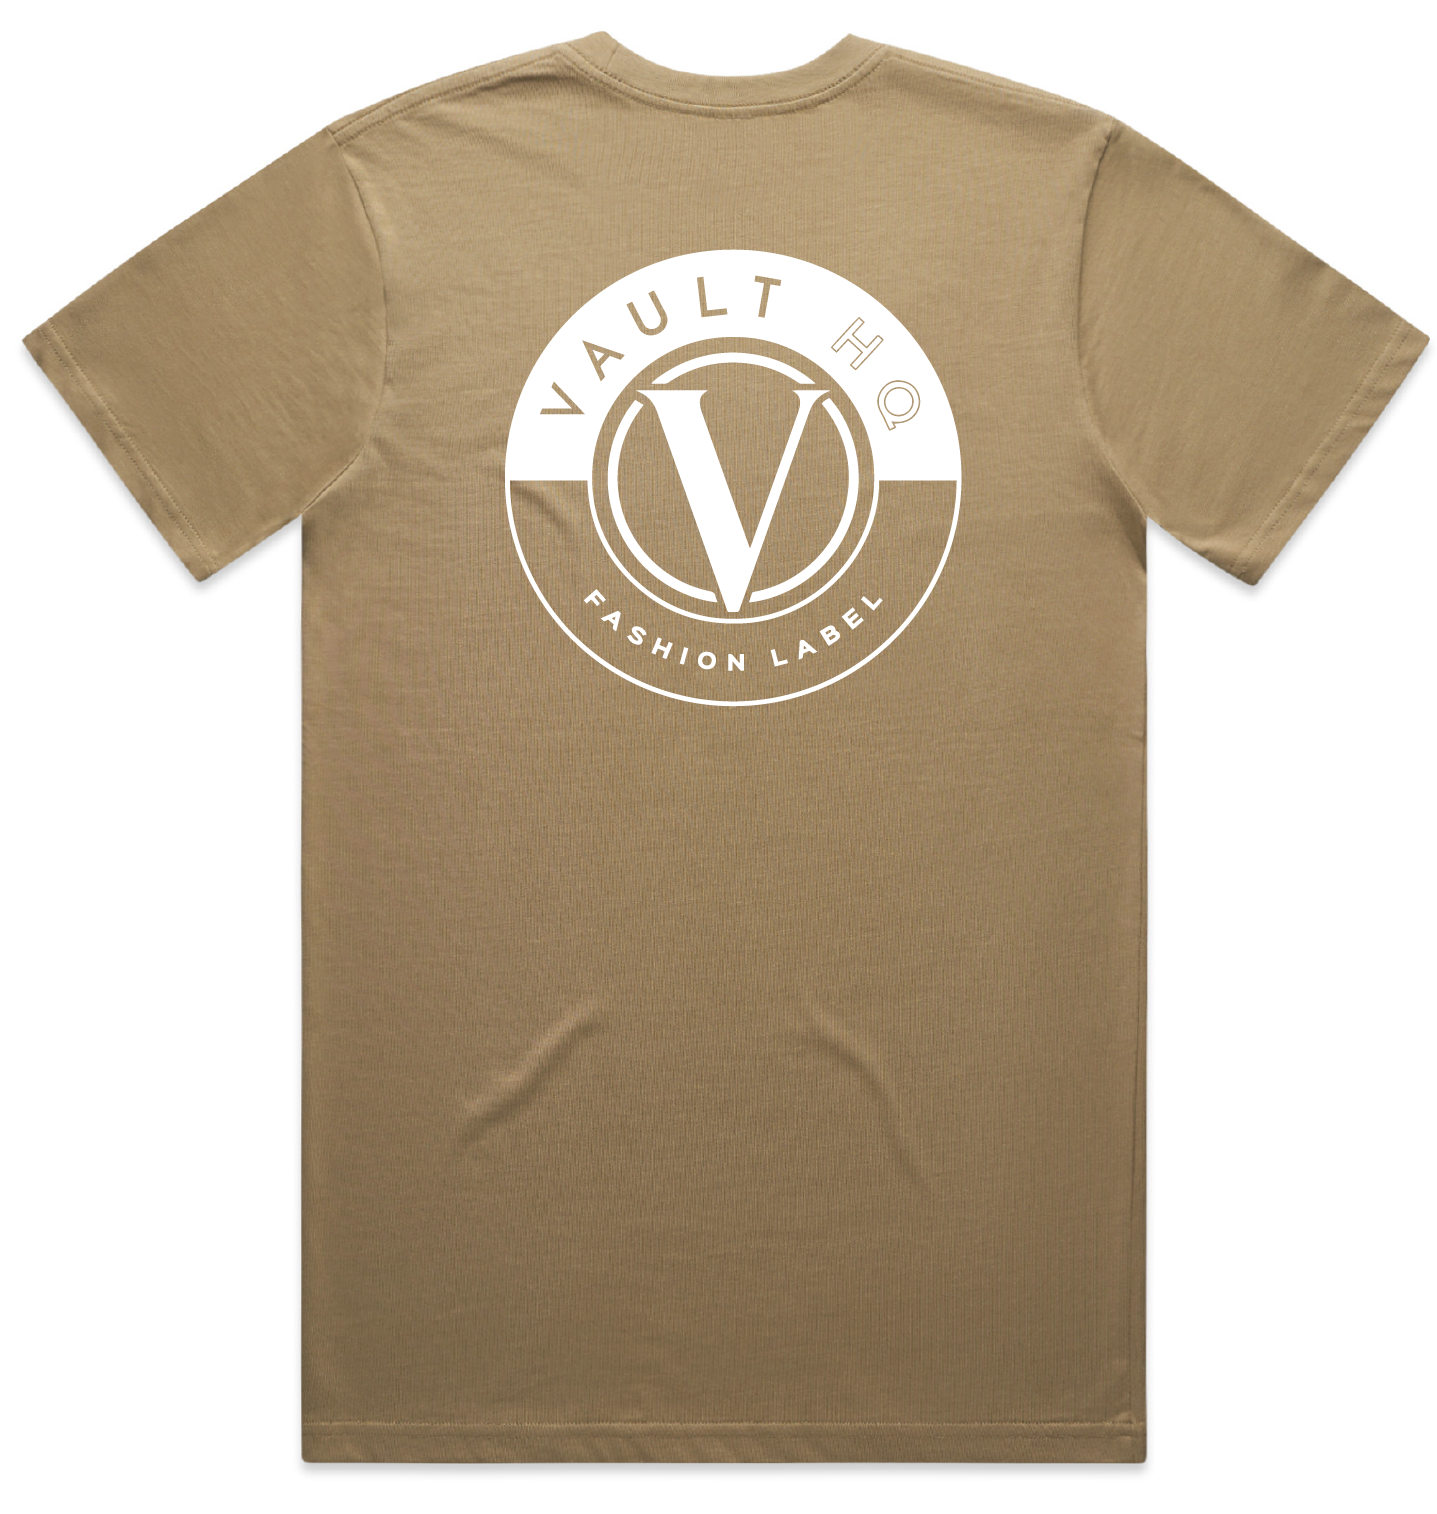 Vault Classic Men's T-shirt - Tan